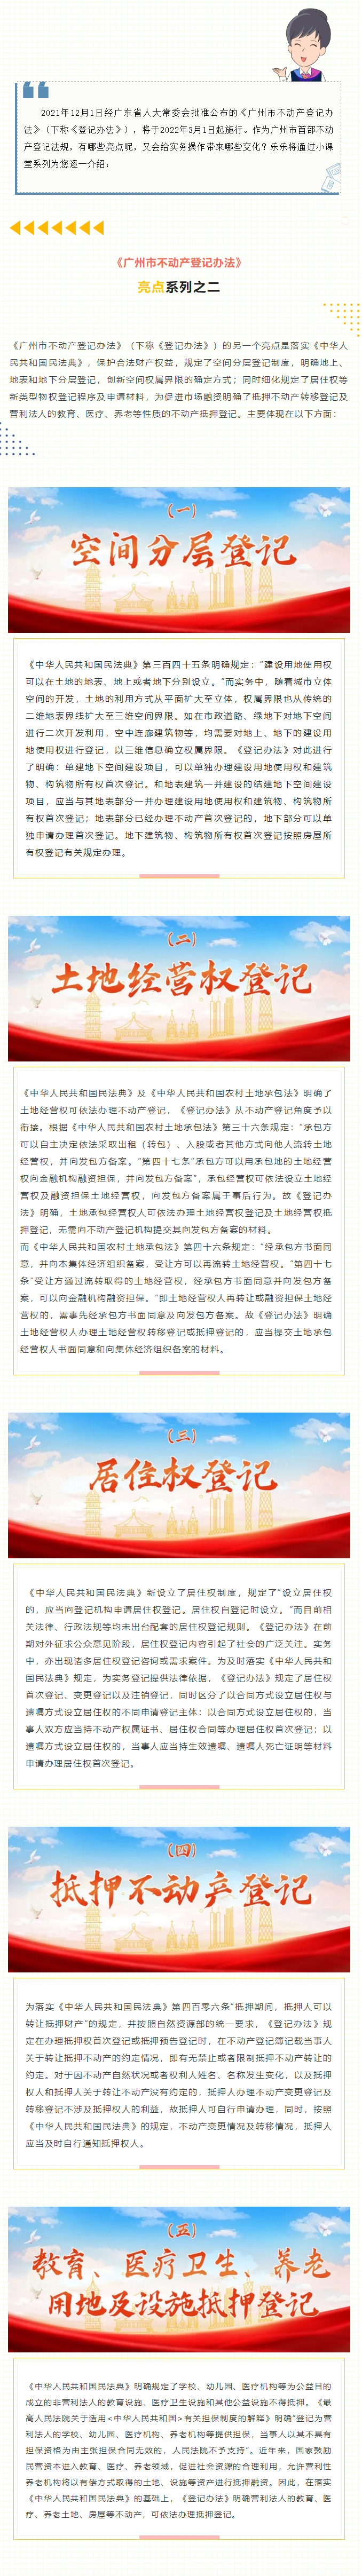 《广州市不动产登记办法》亮点系列之二1.png